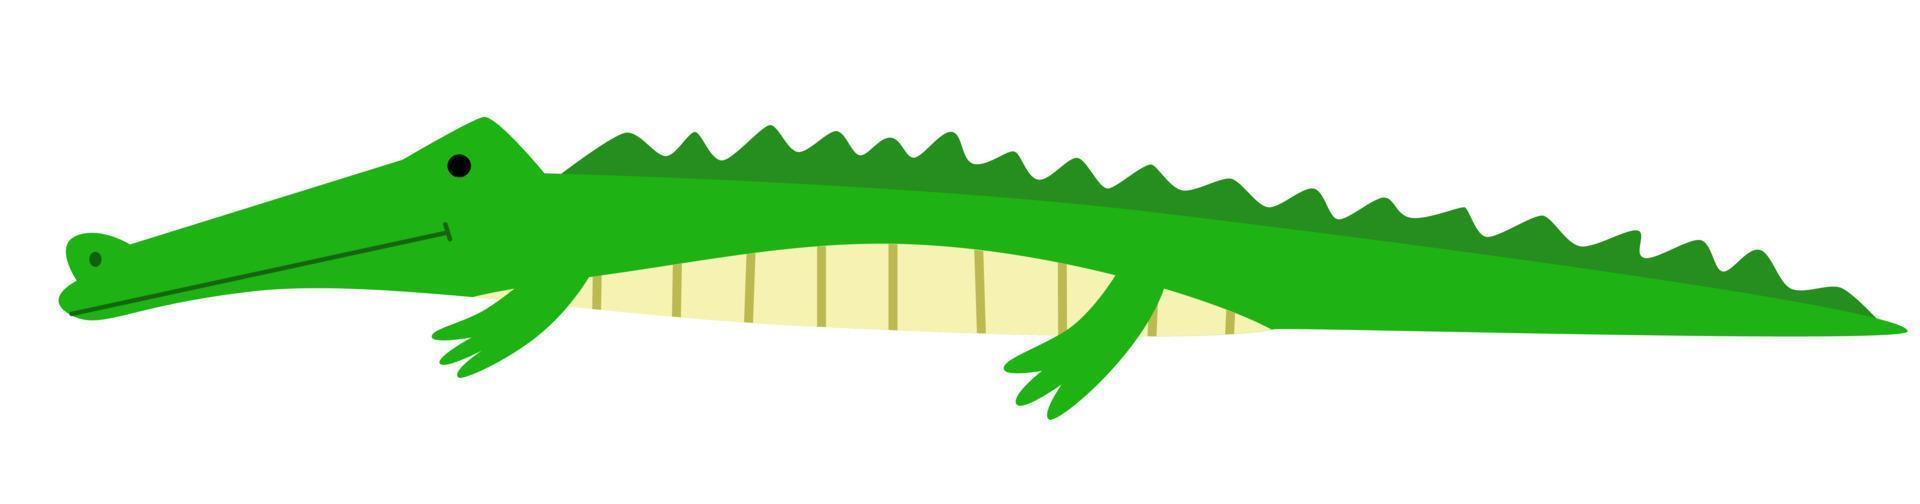 ilustração vetorial de um crocodilo em um estilo simples vetor